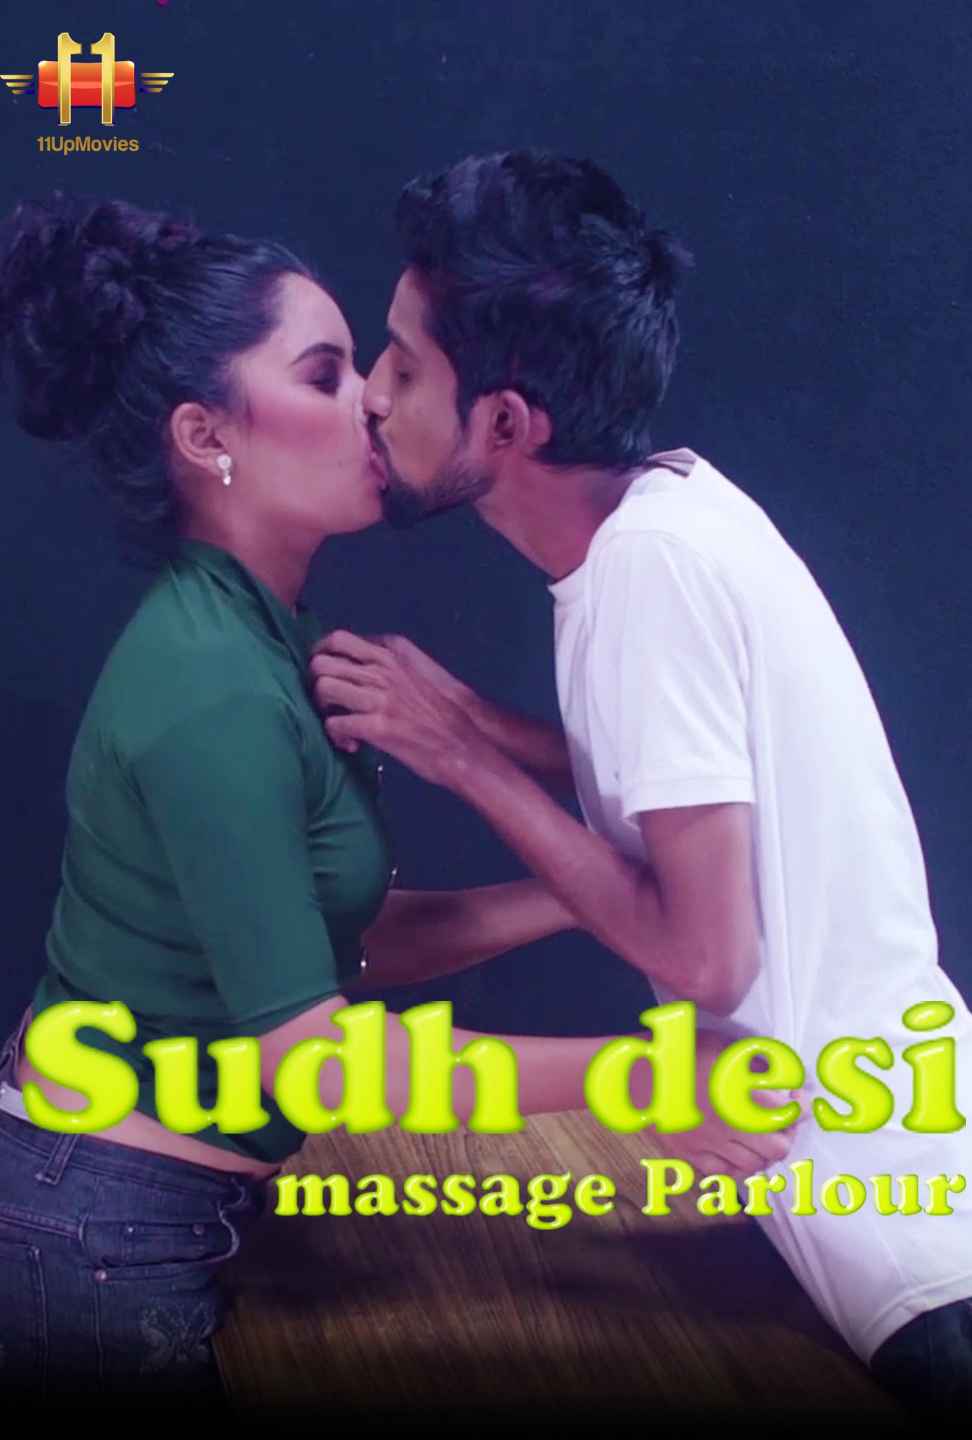 Suddh Desi Massage Parlour (2020) | 11UpMovies Exclusive Series | Season 02 Episodes 03  | 720p WEB-DL | Download | Watch Online